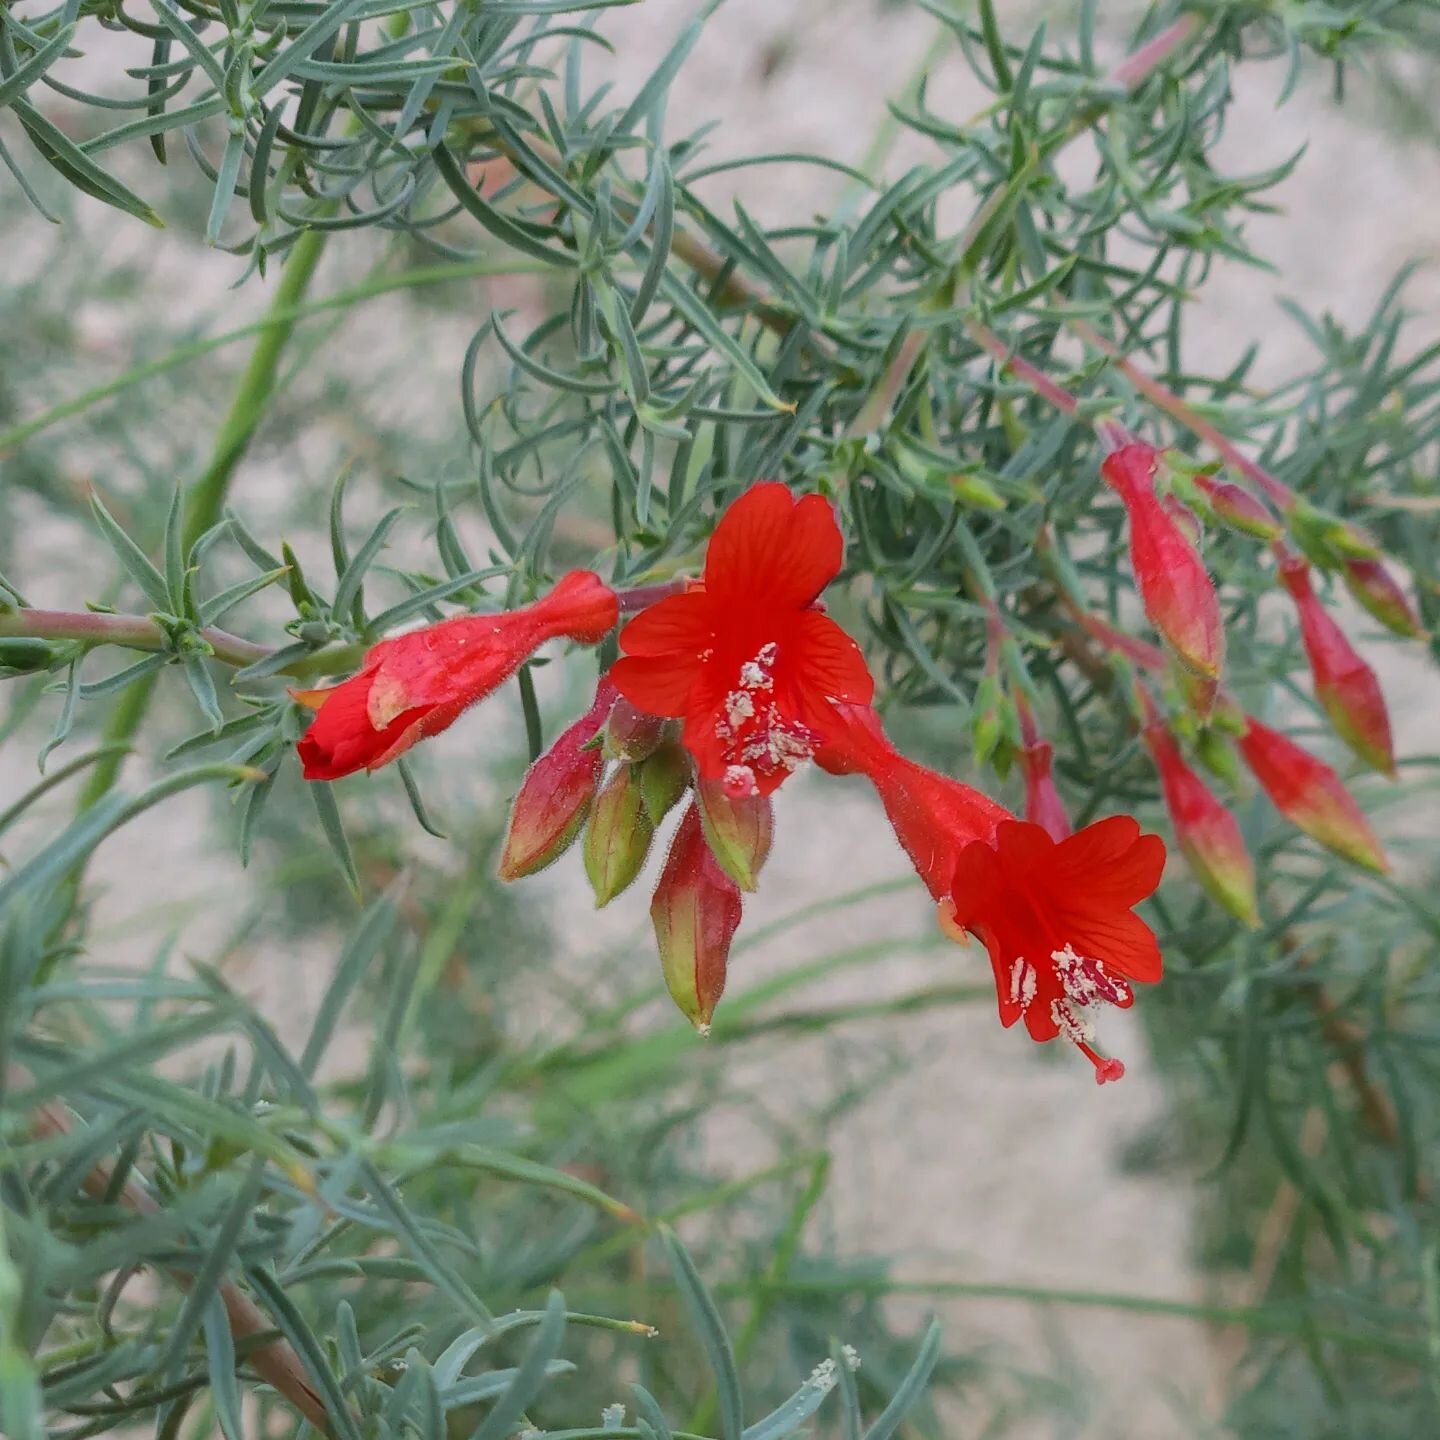 California Fuschia (Epilobium canum) has started its blooming season! ❤️